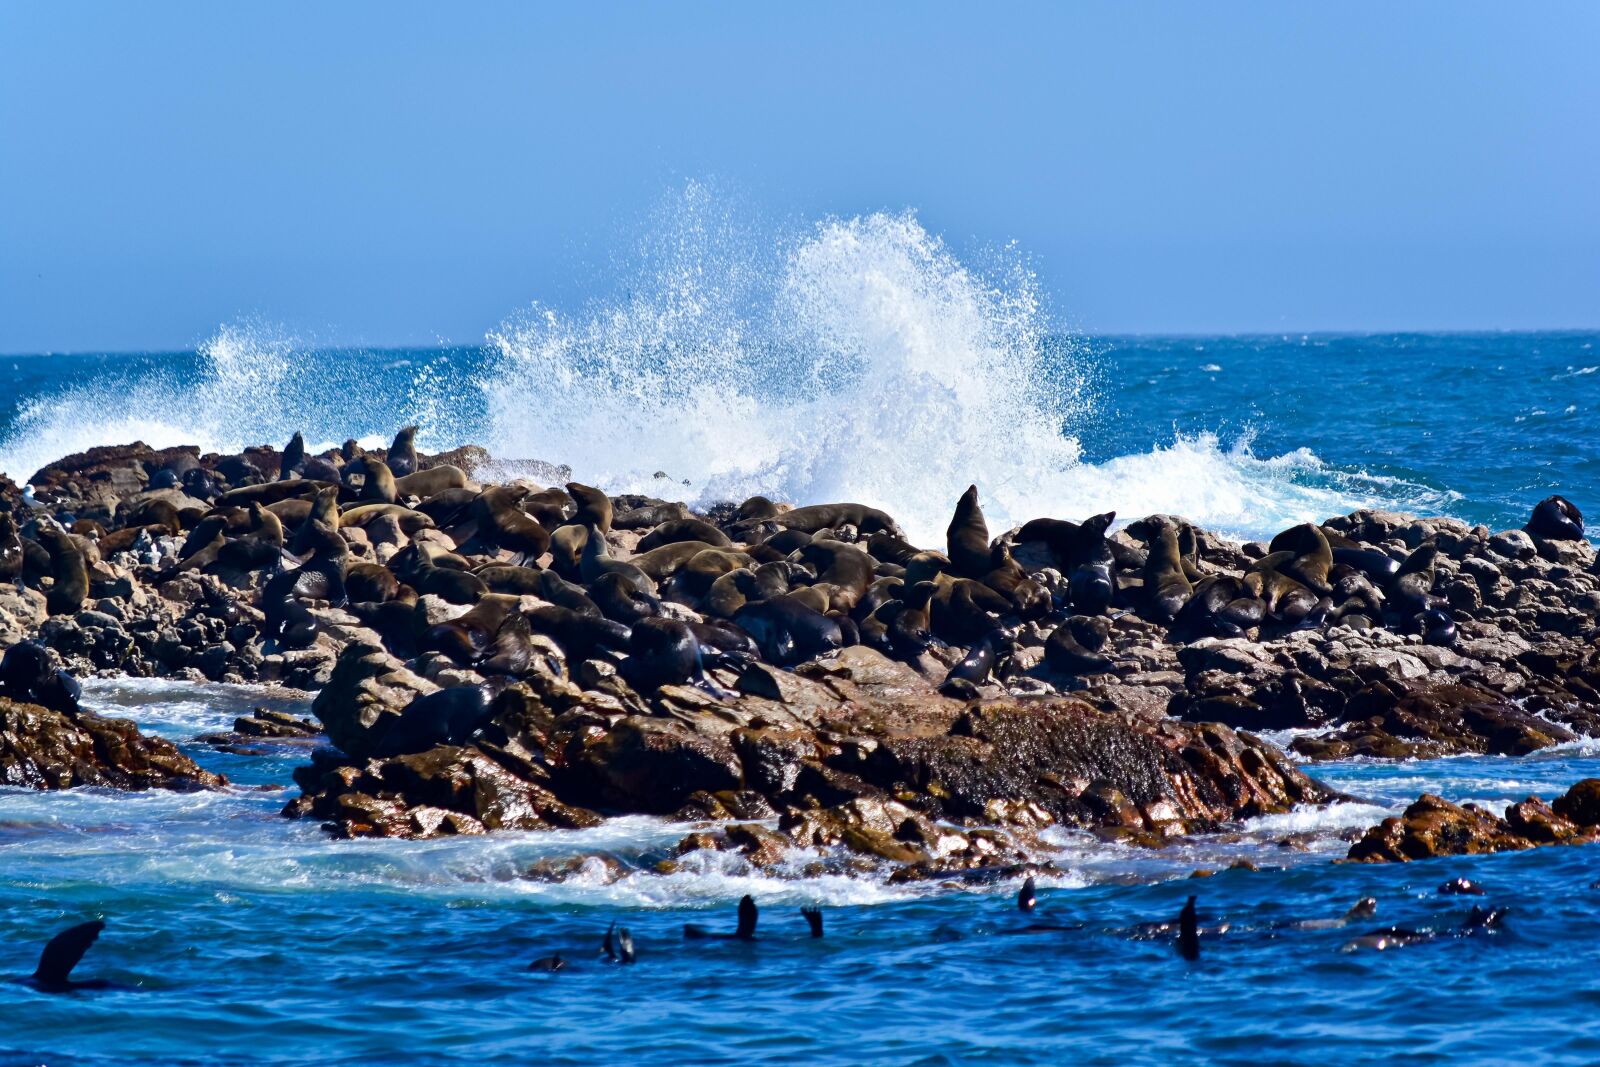 Nikon AF-S DX Nikkor 55-200mm F4-5.6G VR sample photo. Seals, ocean, waves photography